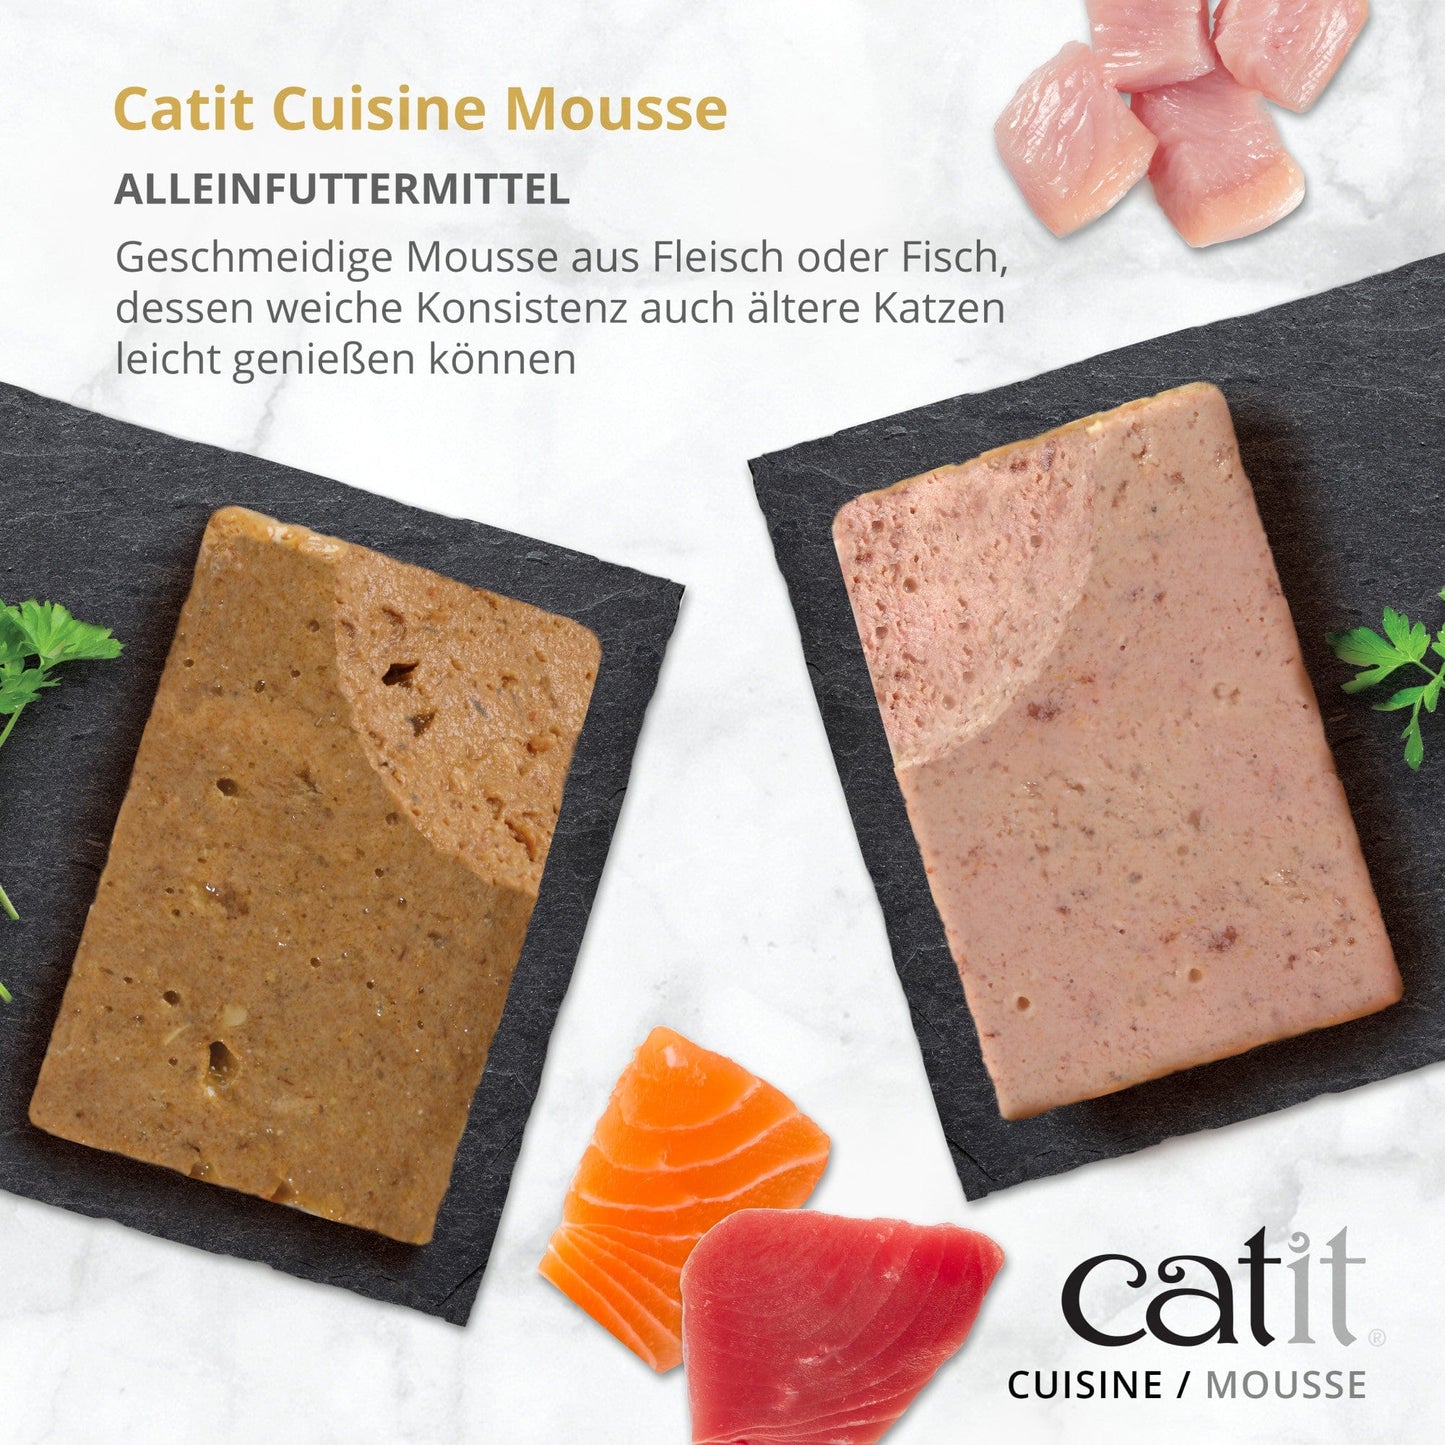 Catit Cuisine – Meeresfisch-Mousse mit Thunfisch & Lachs, 90 g